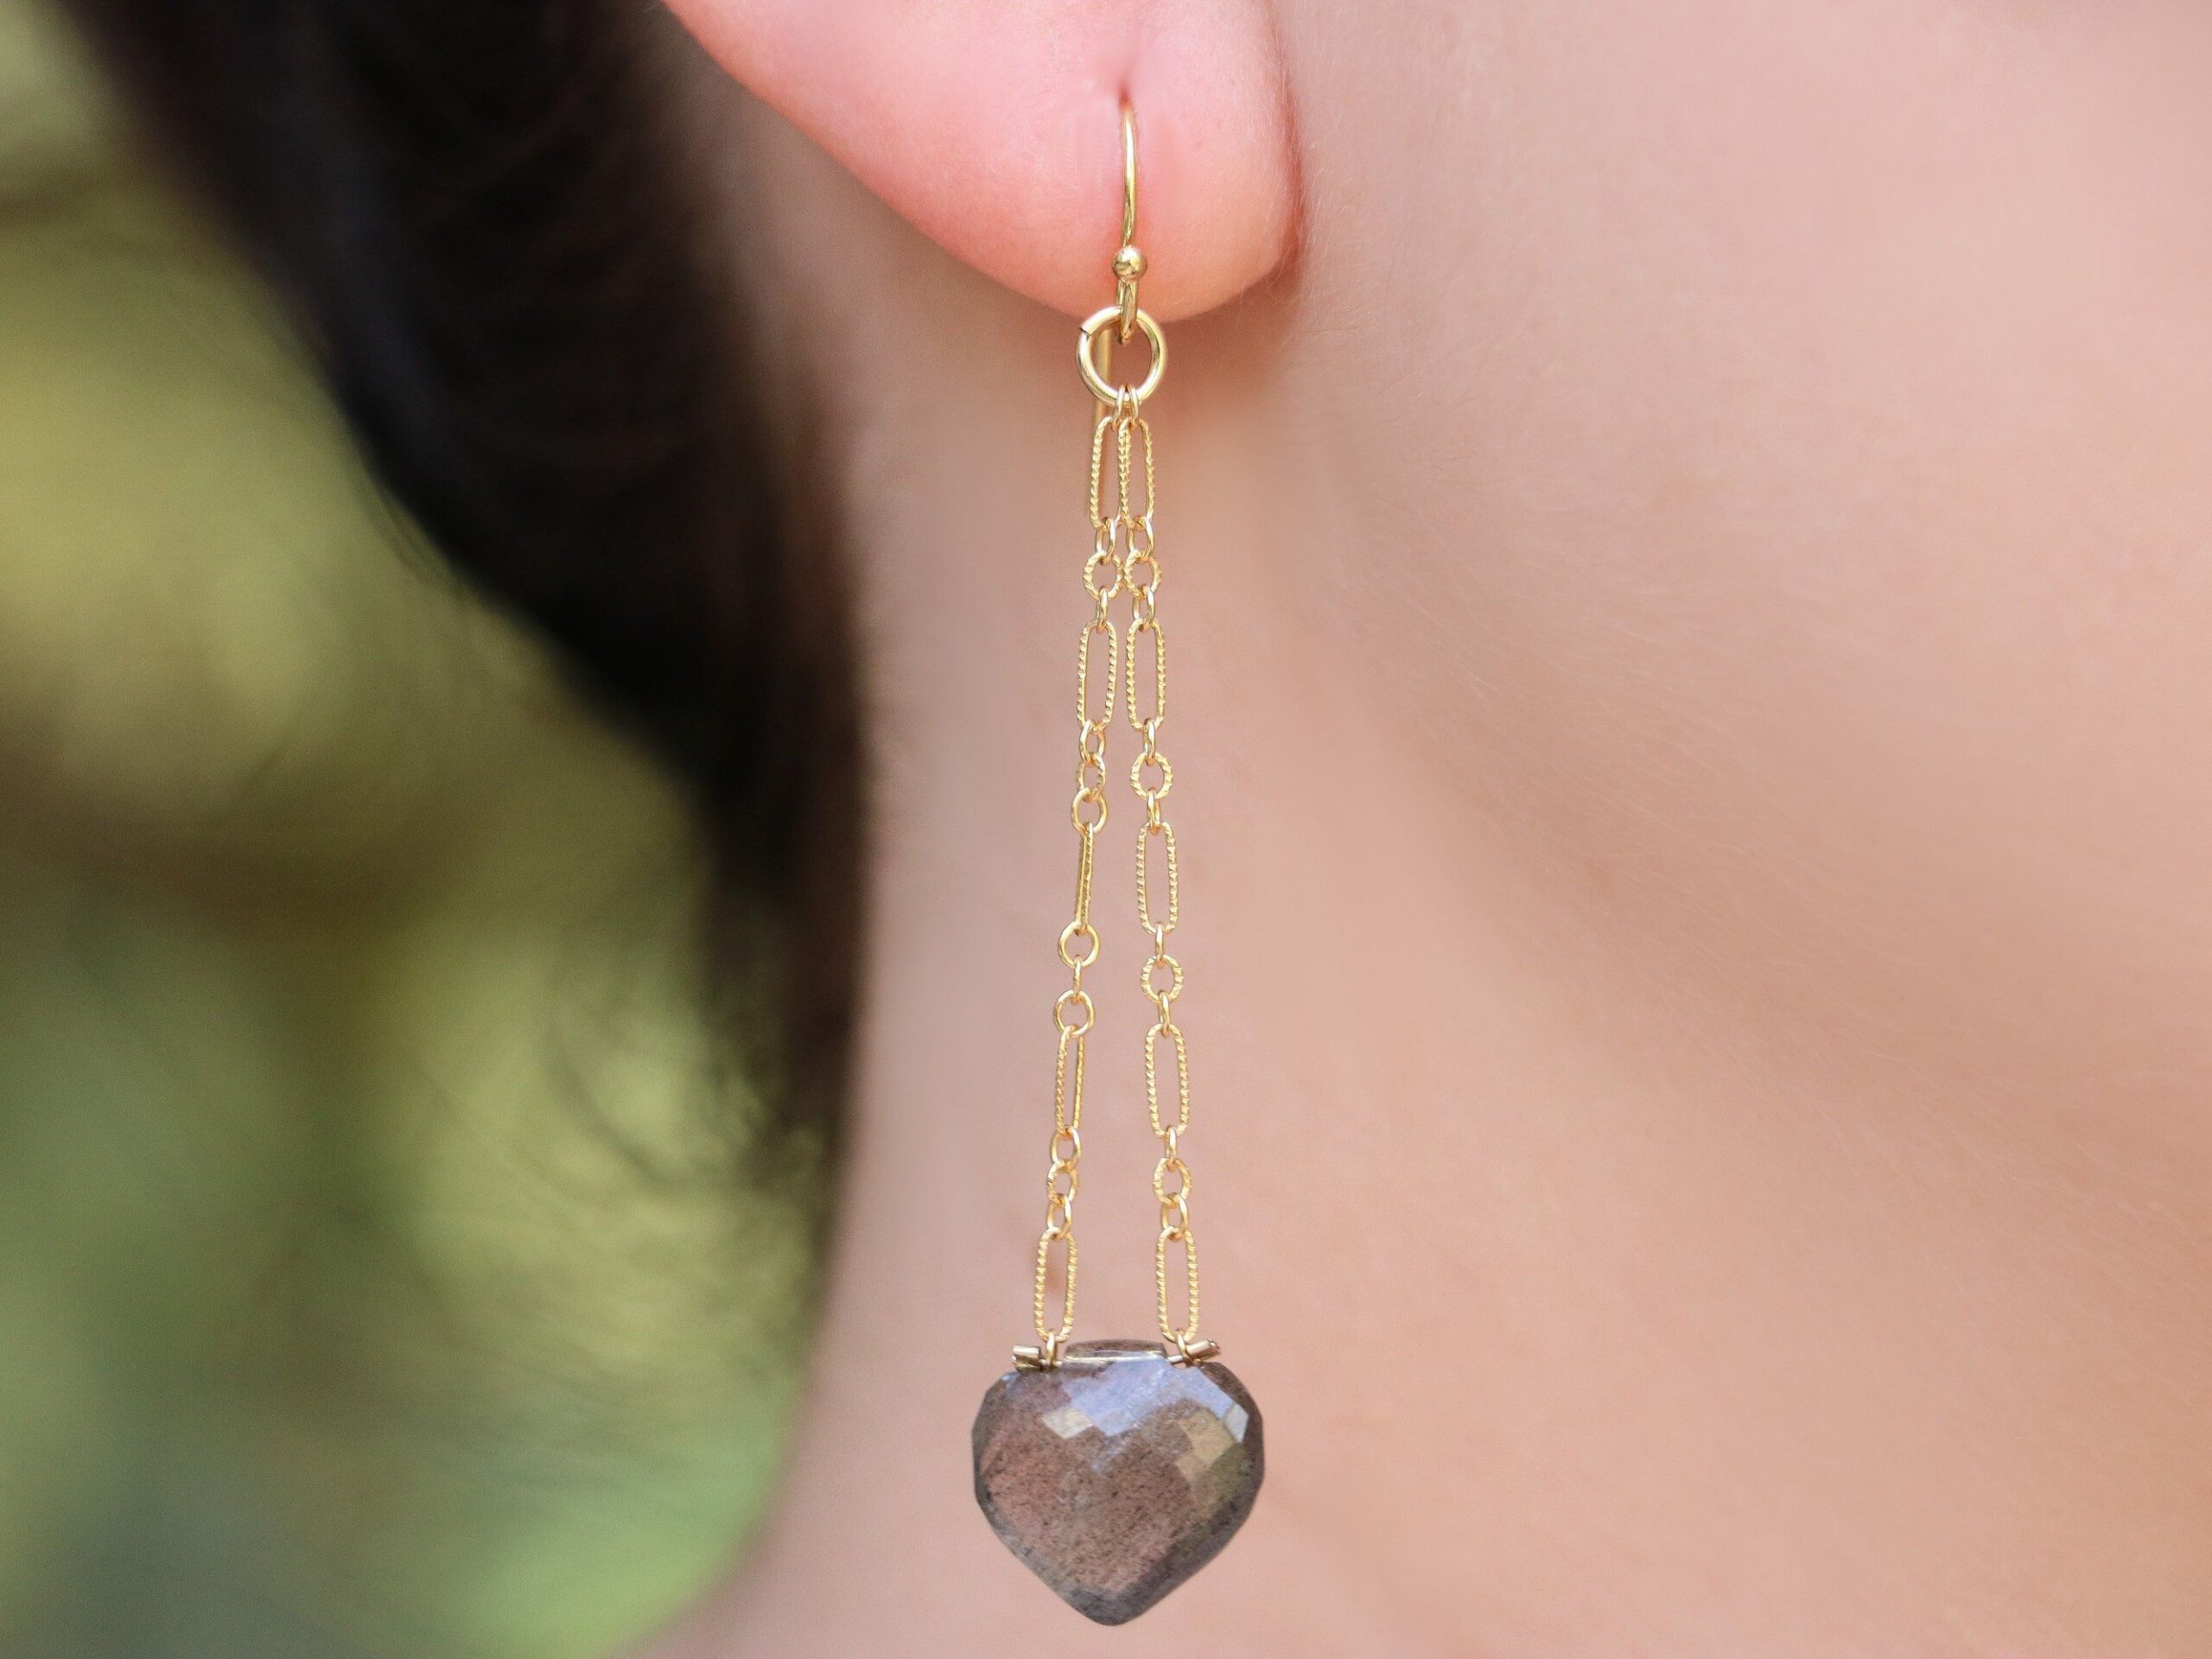 Long Labradorite Earrings in Gold Filled, Gemstone Dangle Earrings with Gray Gemstone